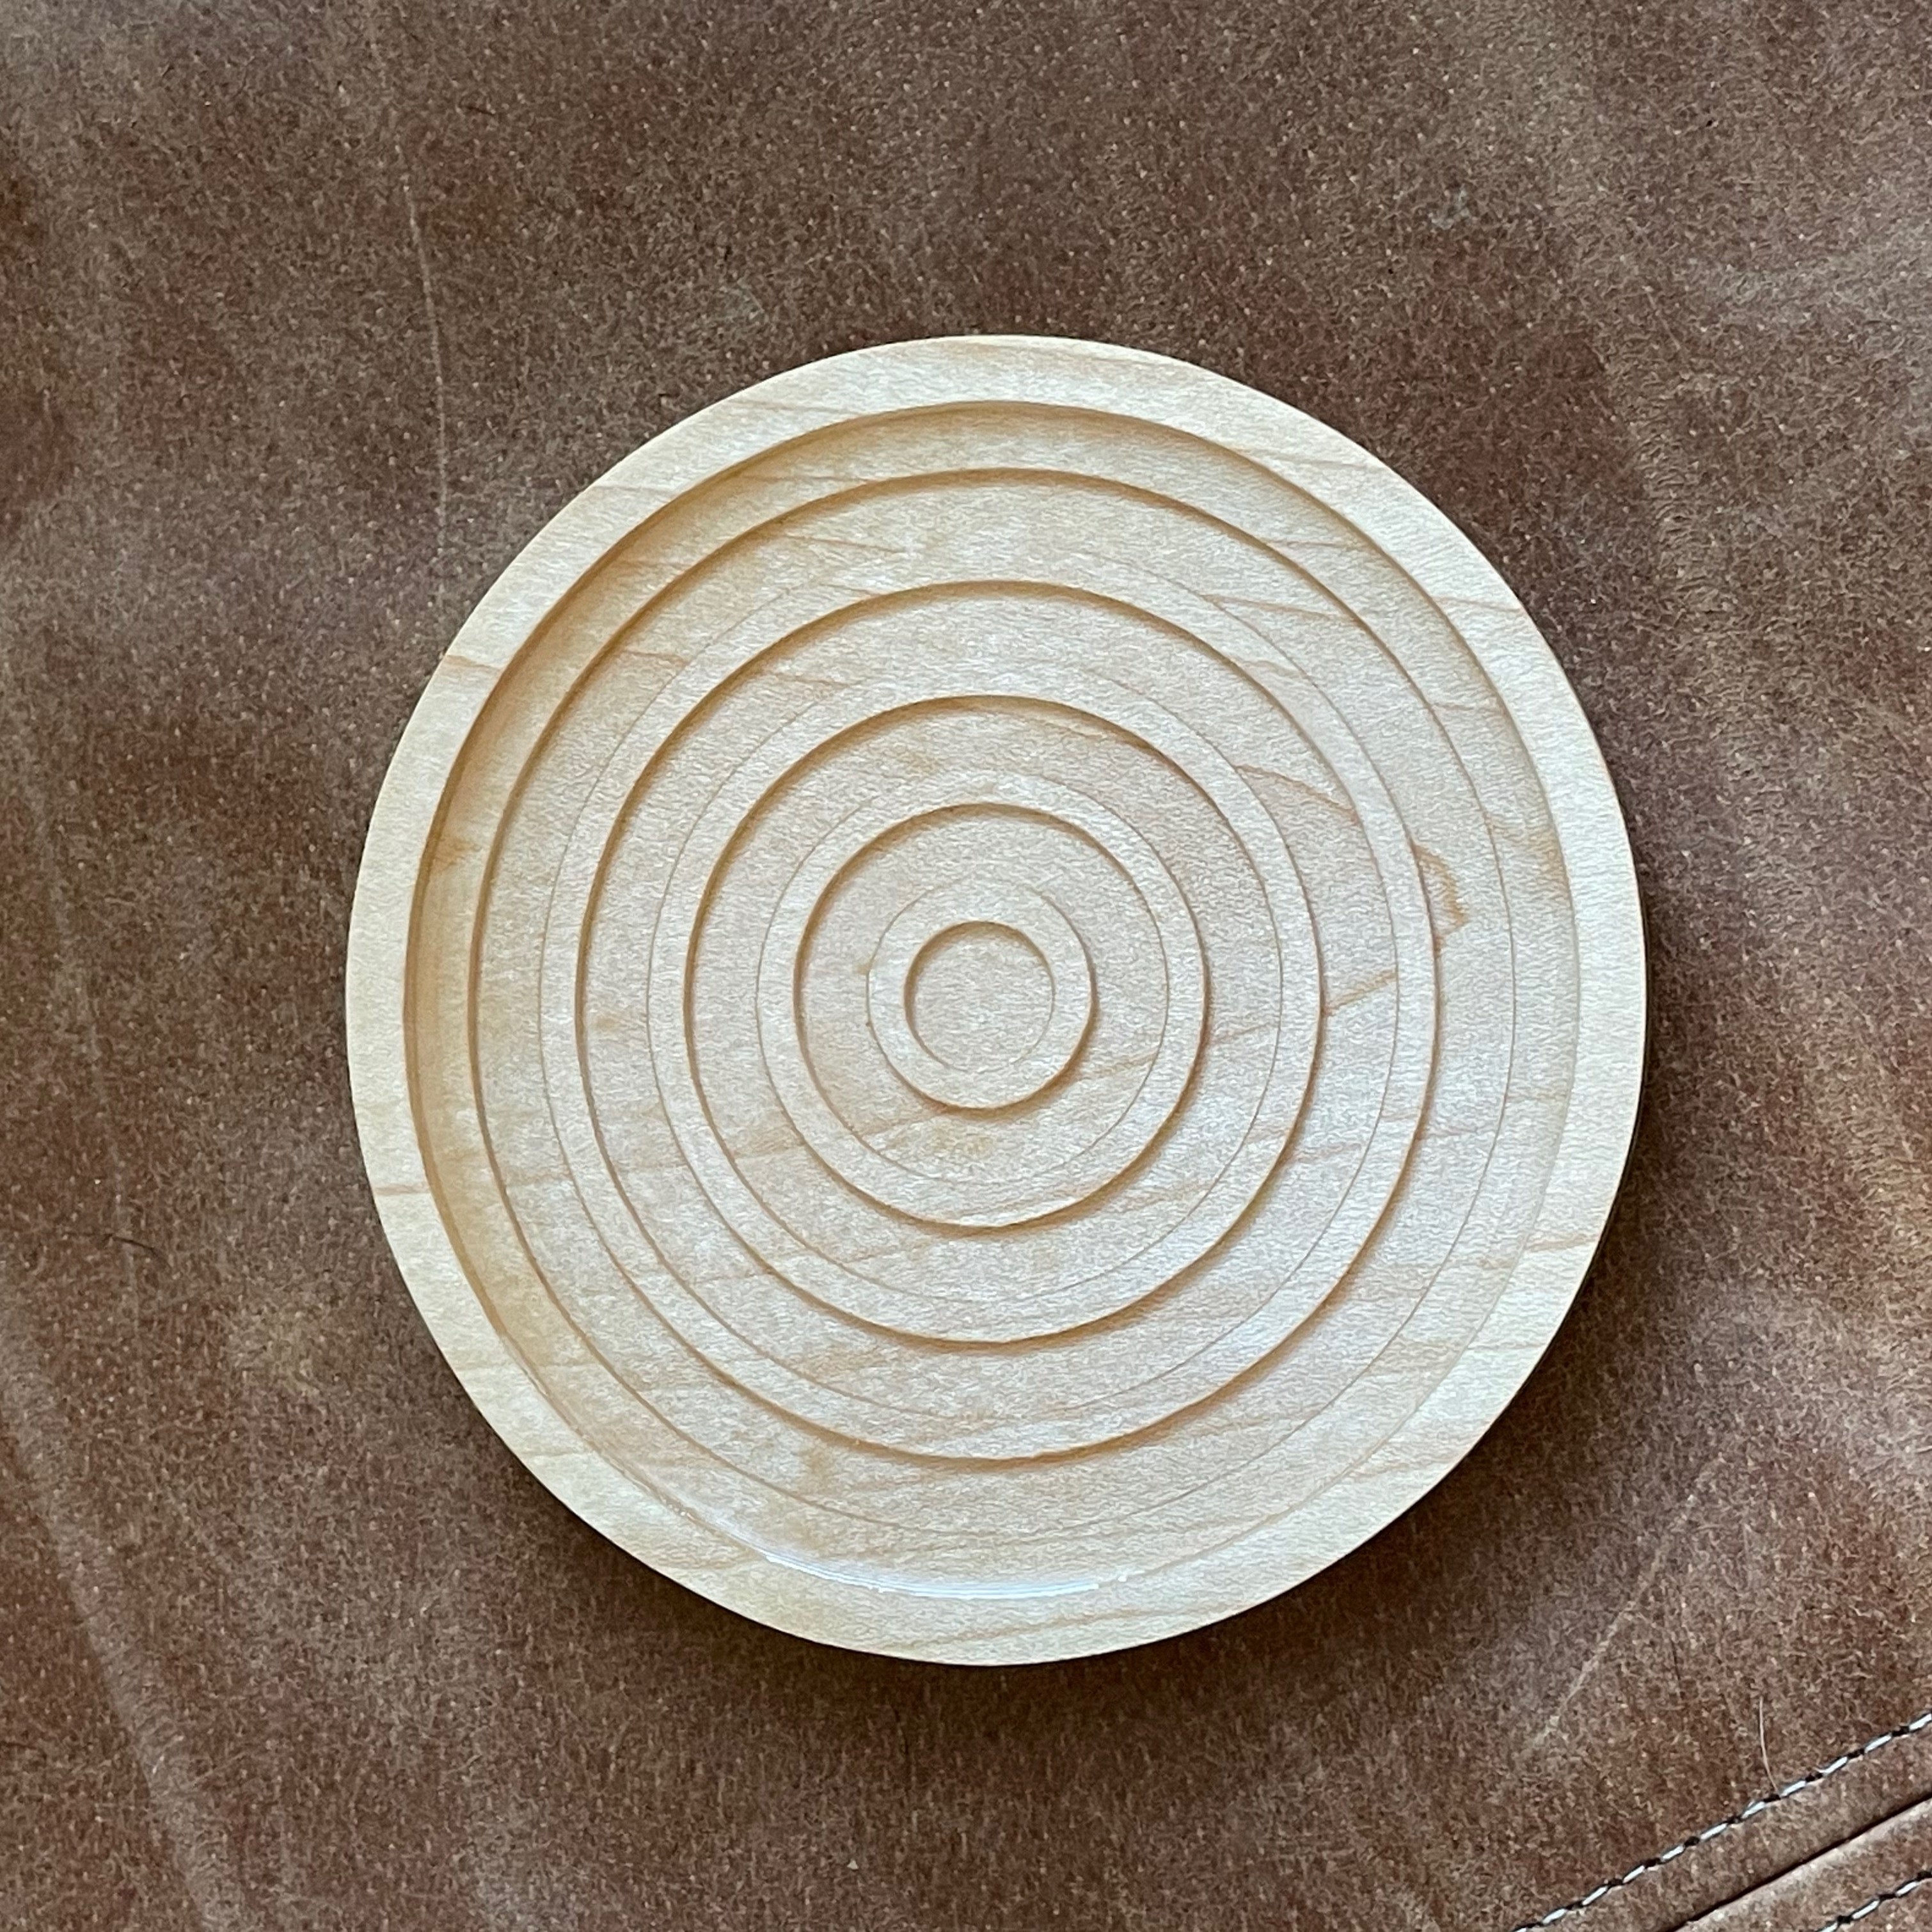 Concentric Circles Coaster